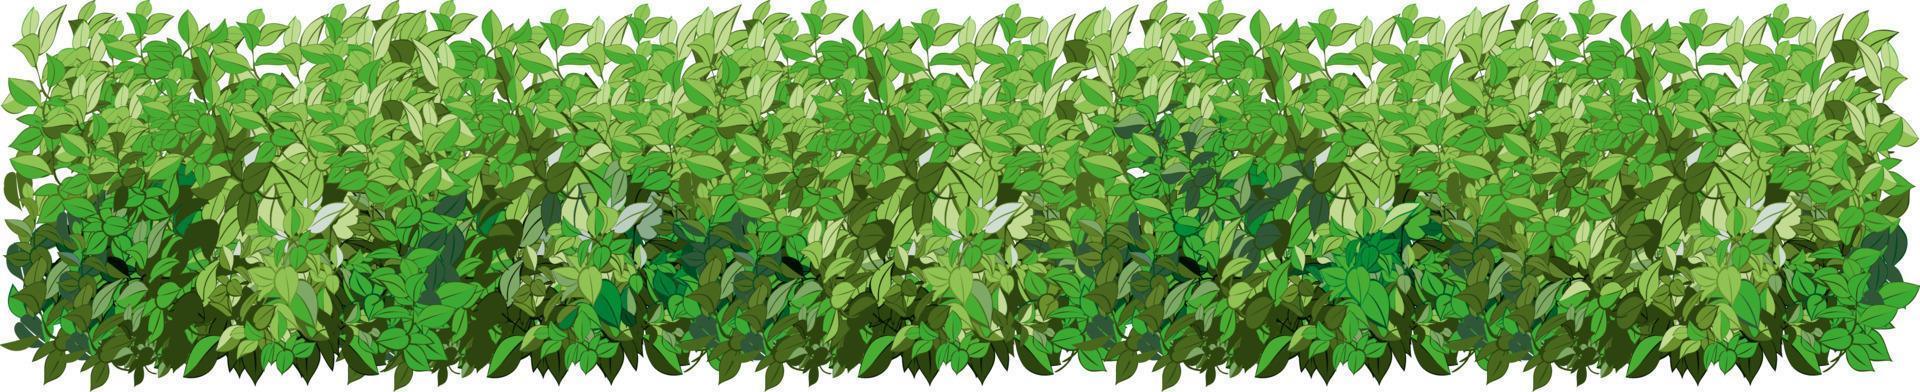 ensemble de plantes vertes ornementales sous la forme d'une haie. arbuste de jardin réaliste, buisson saisonnier, buis, feuillage de brousse de couronne d'arbre. vecteur